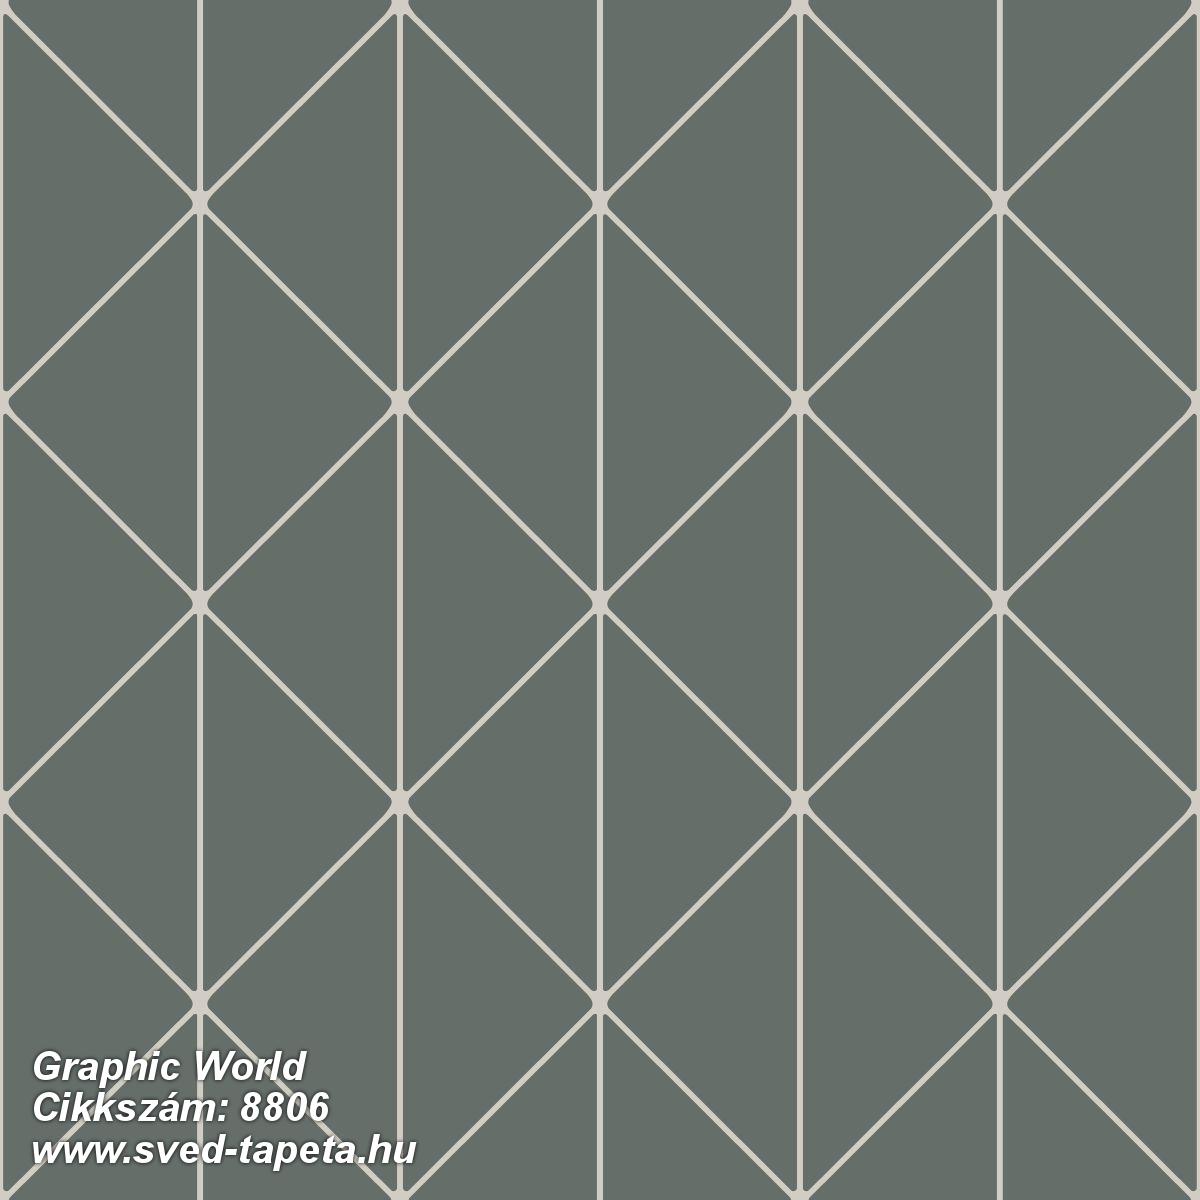 Graphic World 8806 cikkszámú svéd ECOgyártmányú designtapéta